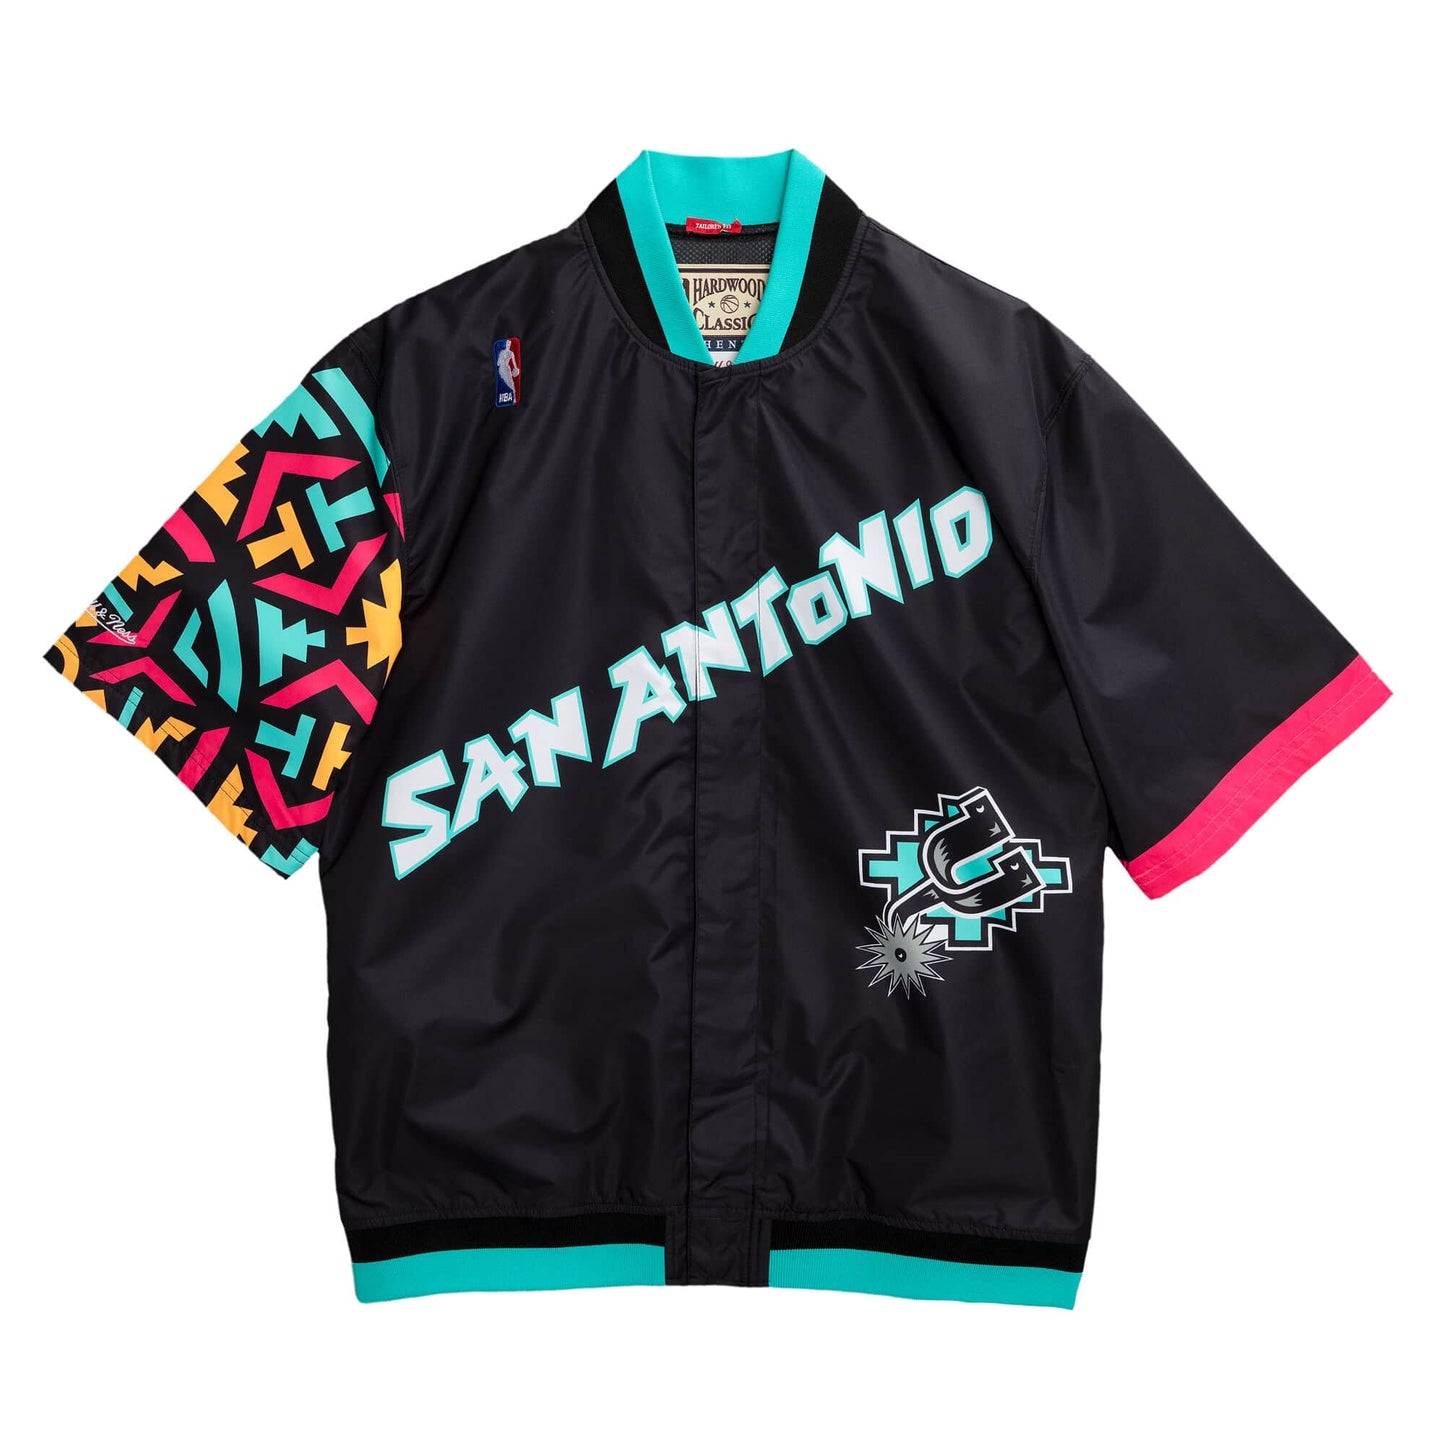 Authentic Warm Up Jacket San Antonio Spurs 1995-96